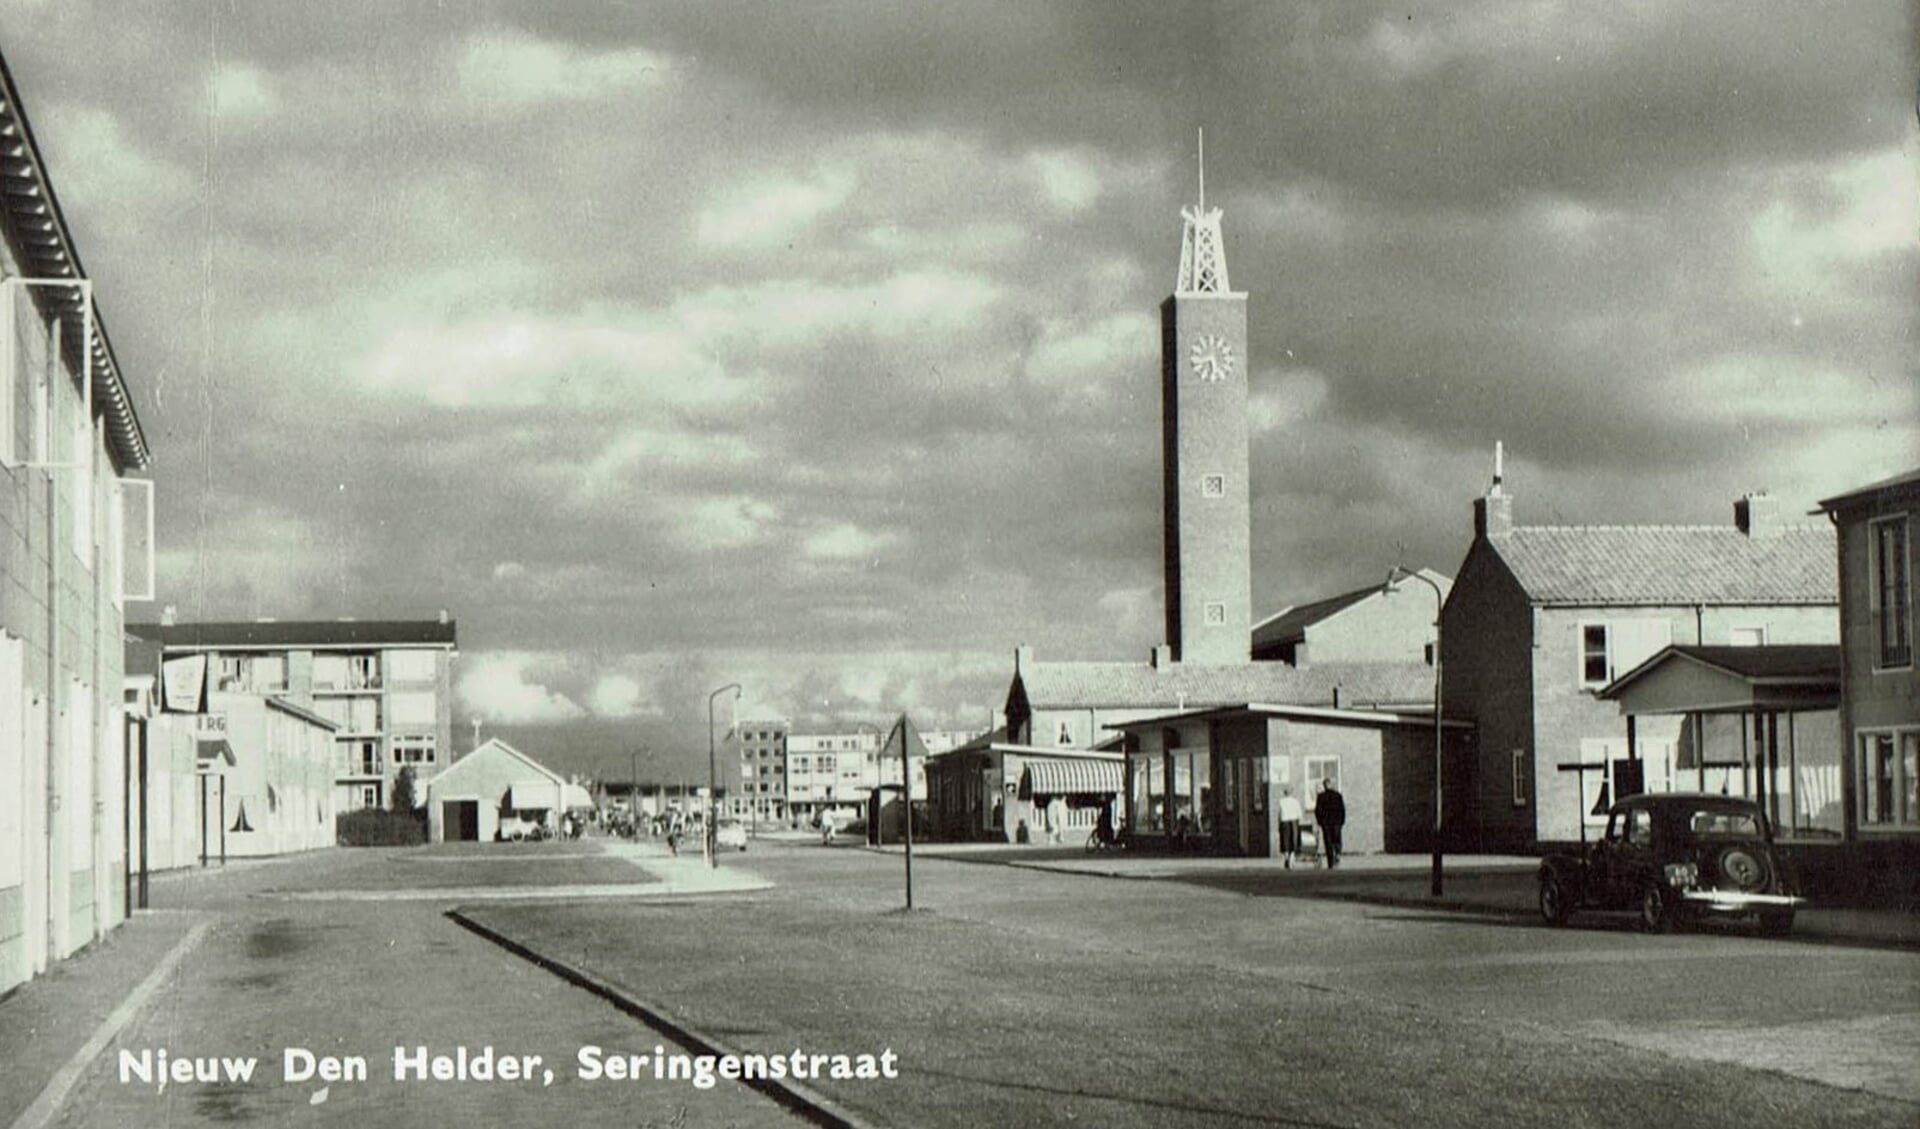 De Seringenstraat in Nieuw Den Helder.